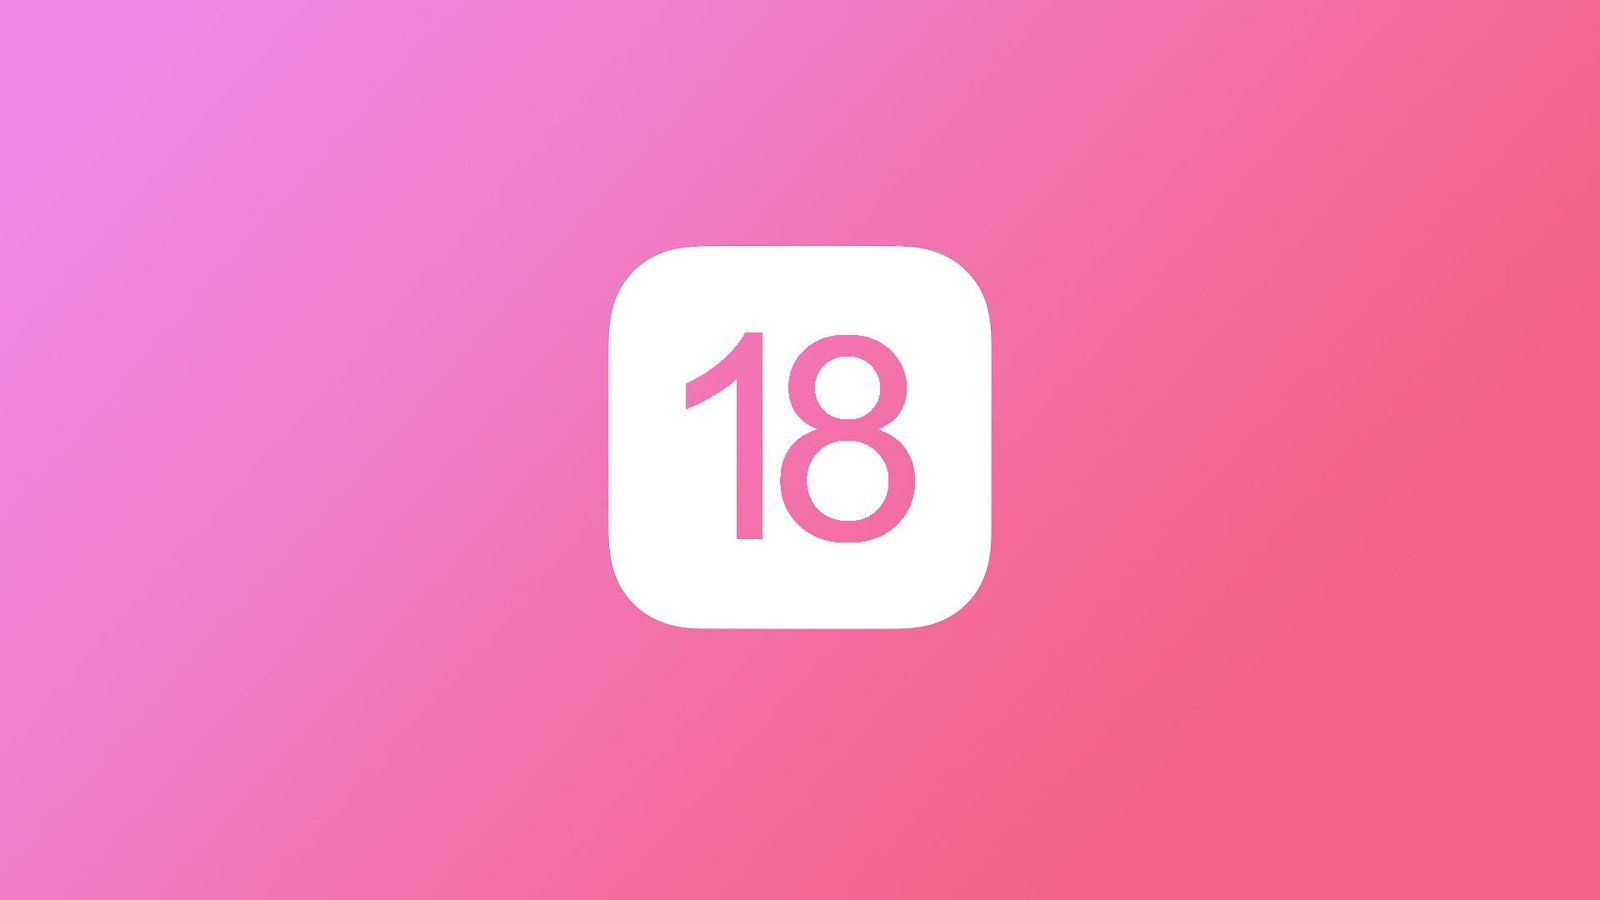 O que esperar do iOS 18? | Novos recursos, iPhones compatíveis e mais